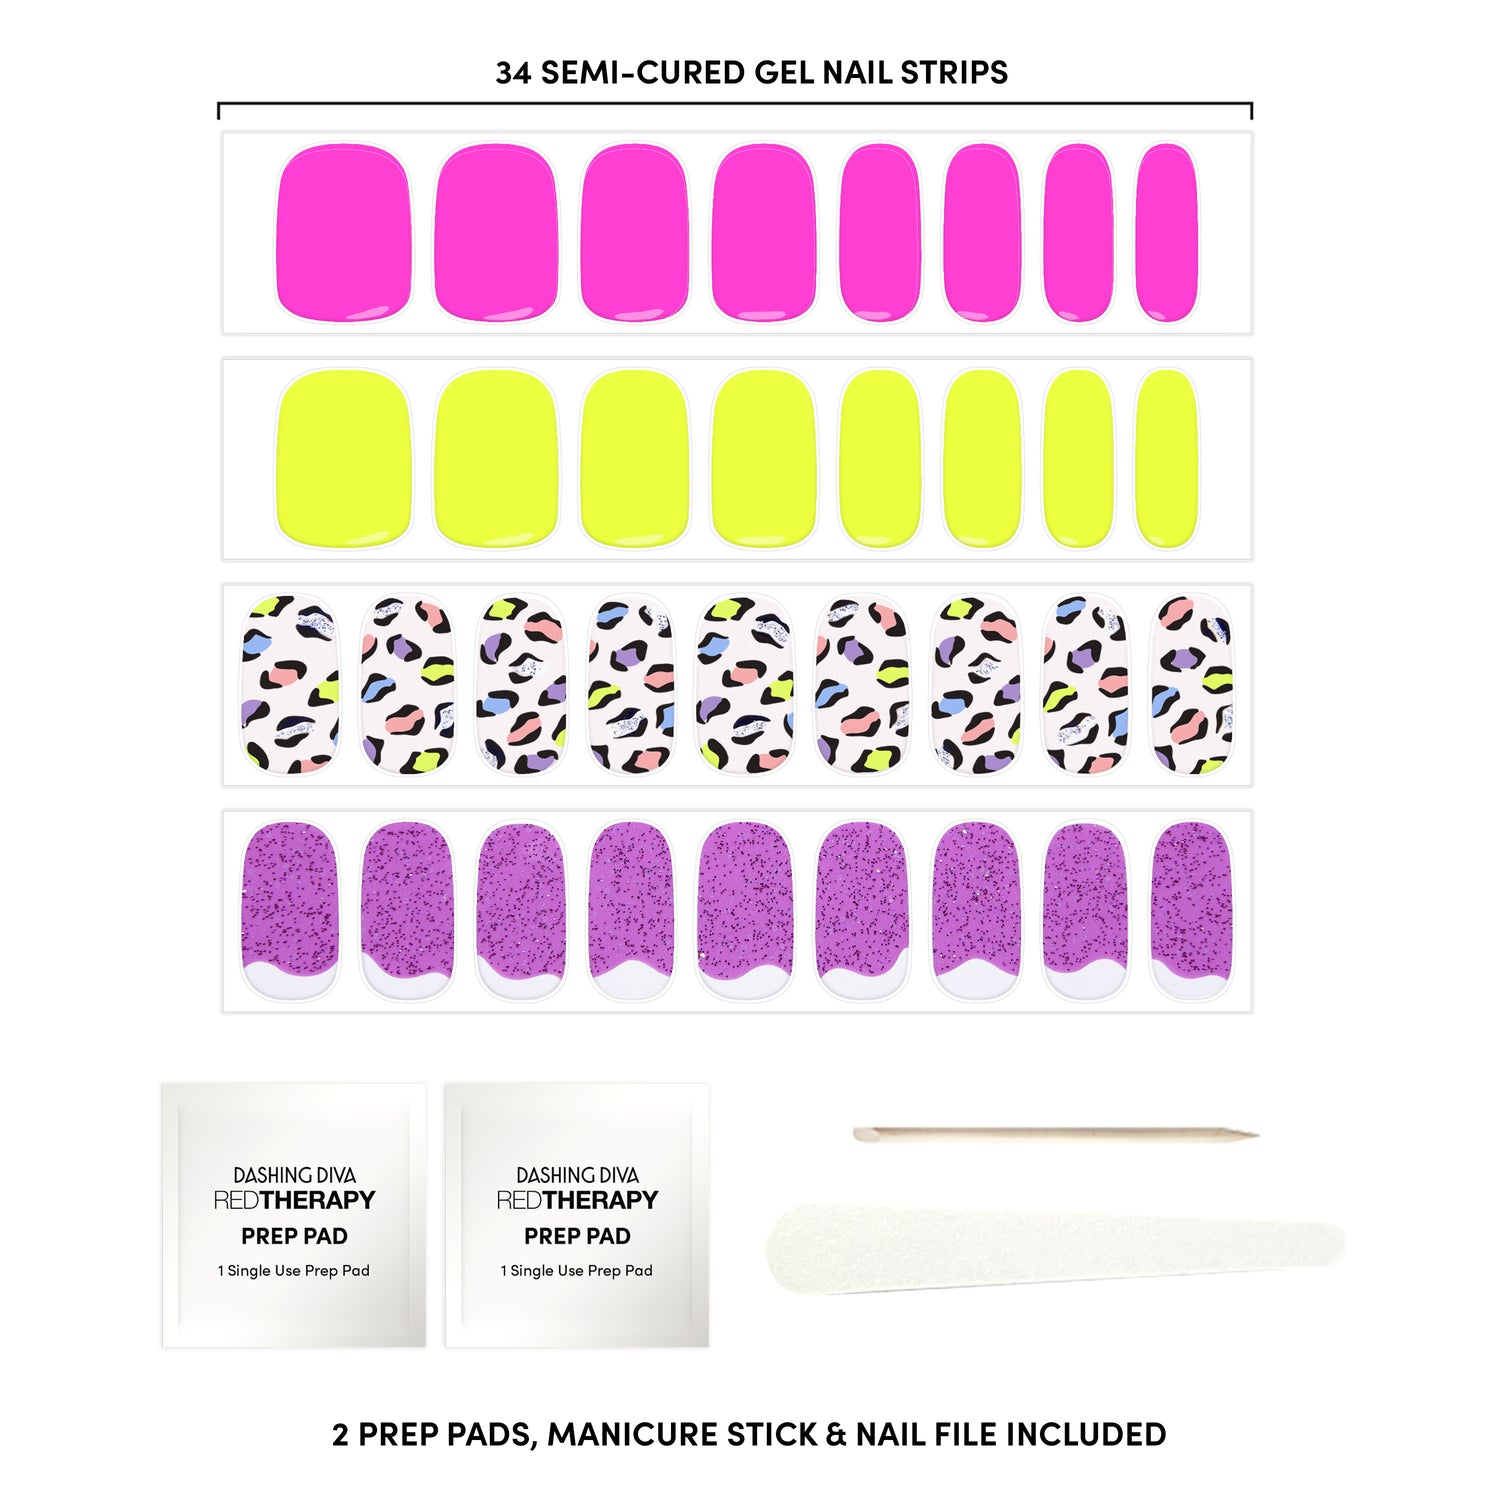 Nail sizing chart, neon colors, manicure stick, nail file